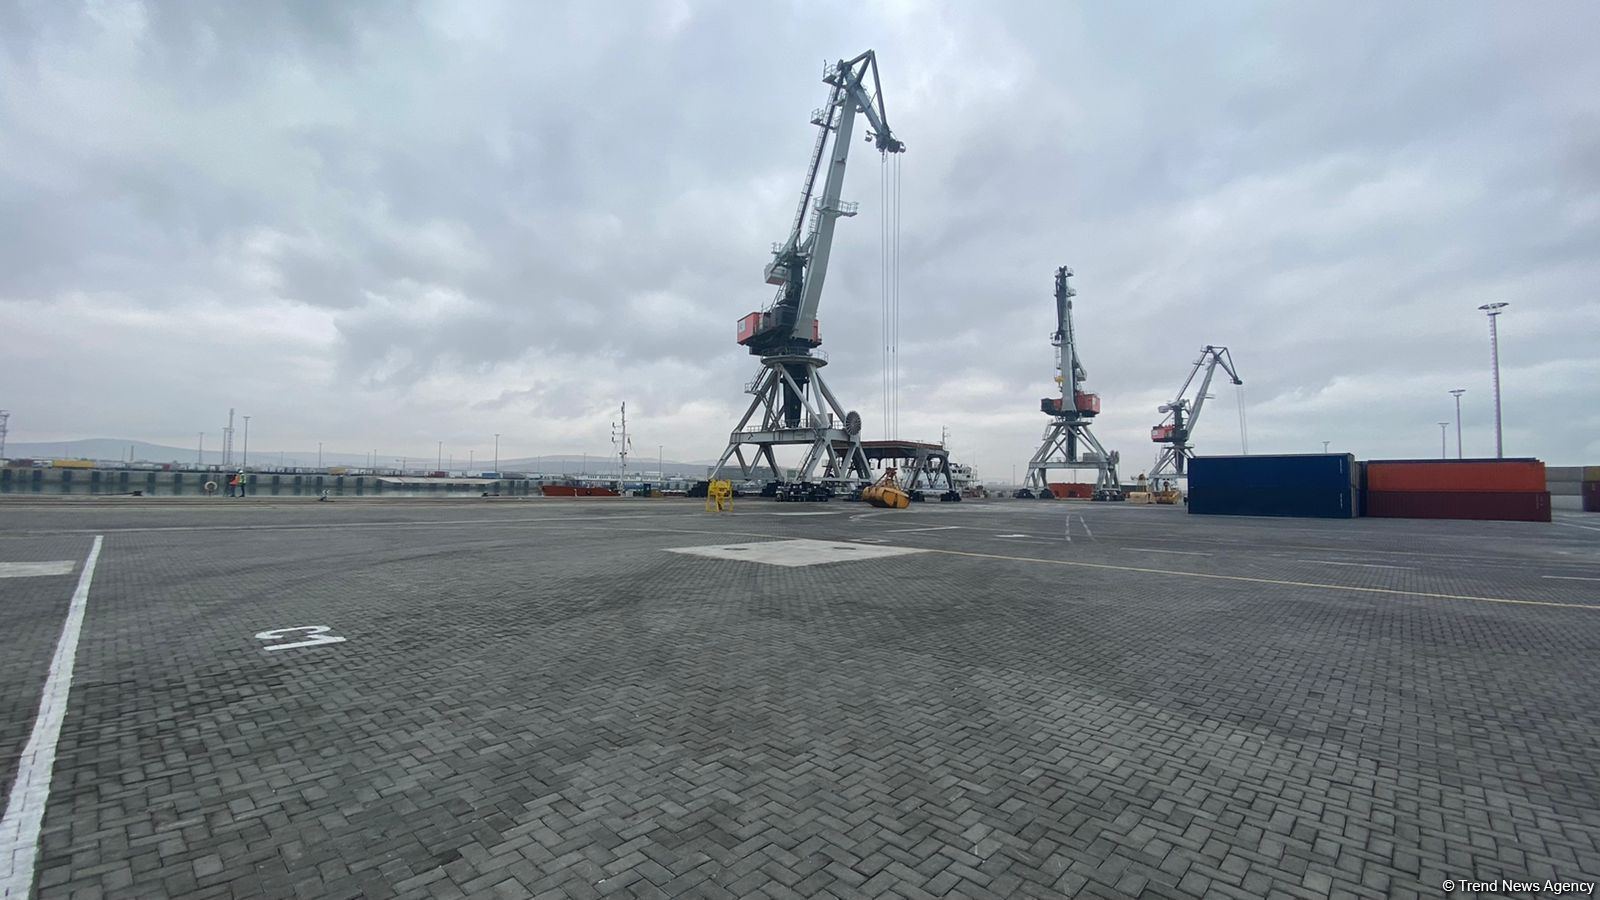 Baku port reveals cargo shipment capability of Ro-Ro terminal